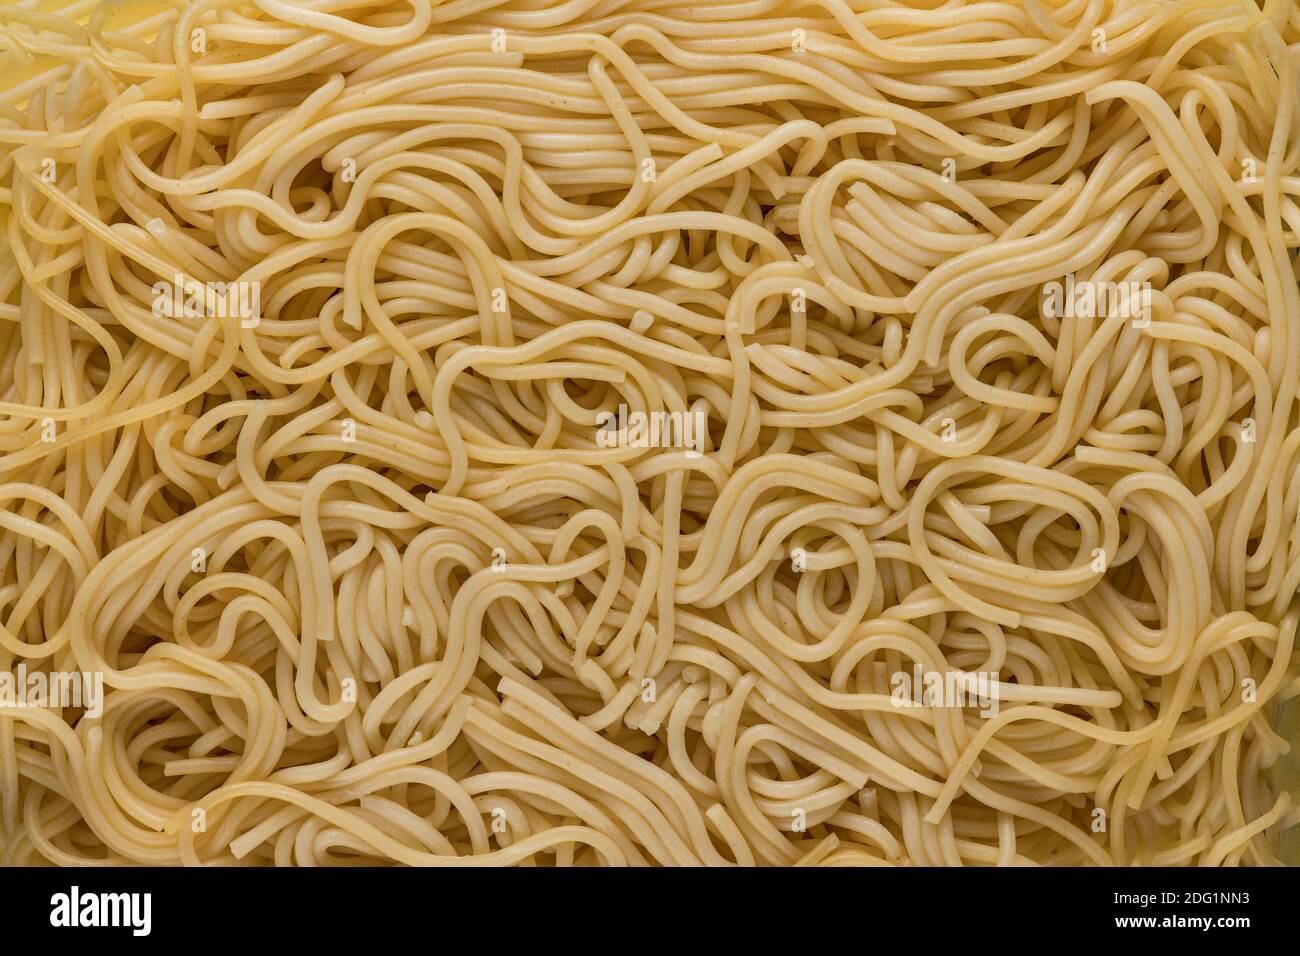 Dettaglio spaghetti cotti Foto Stock